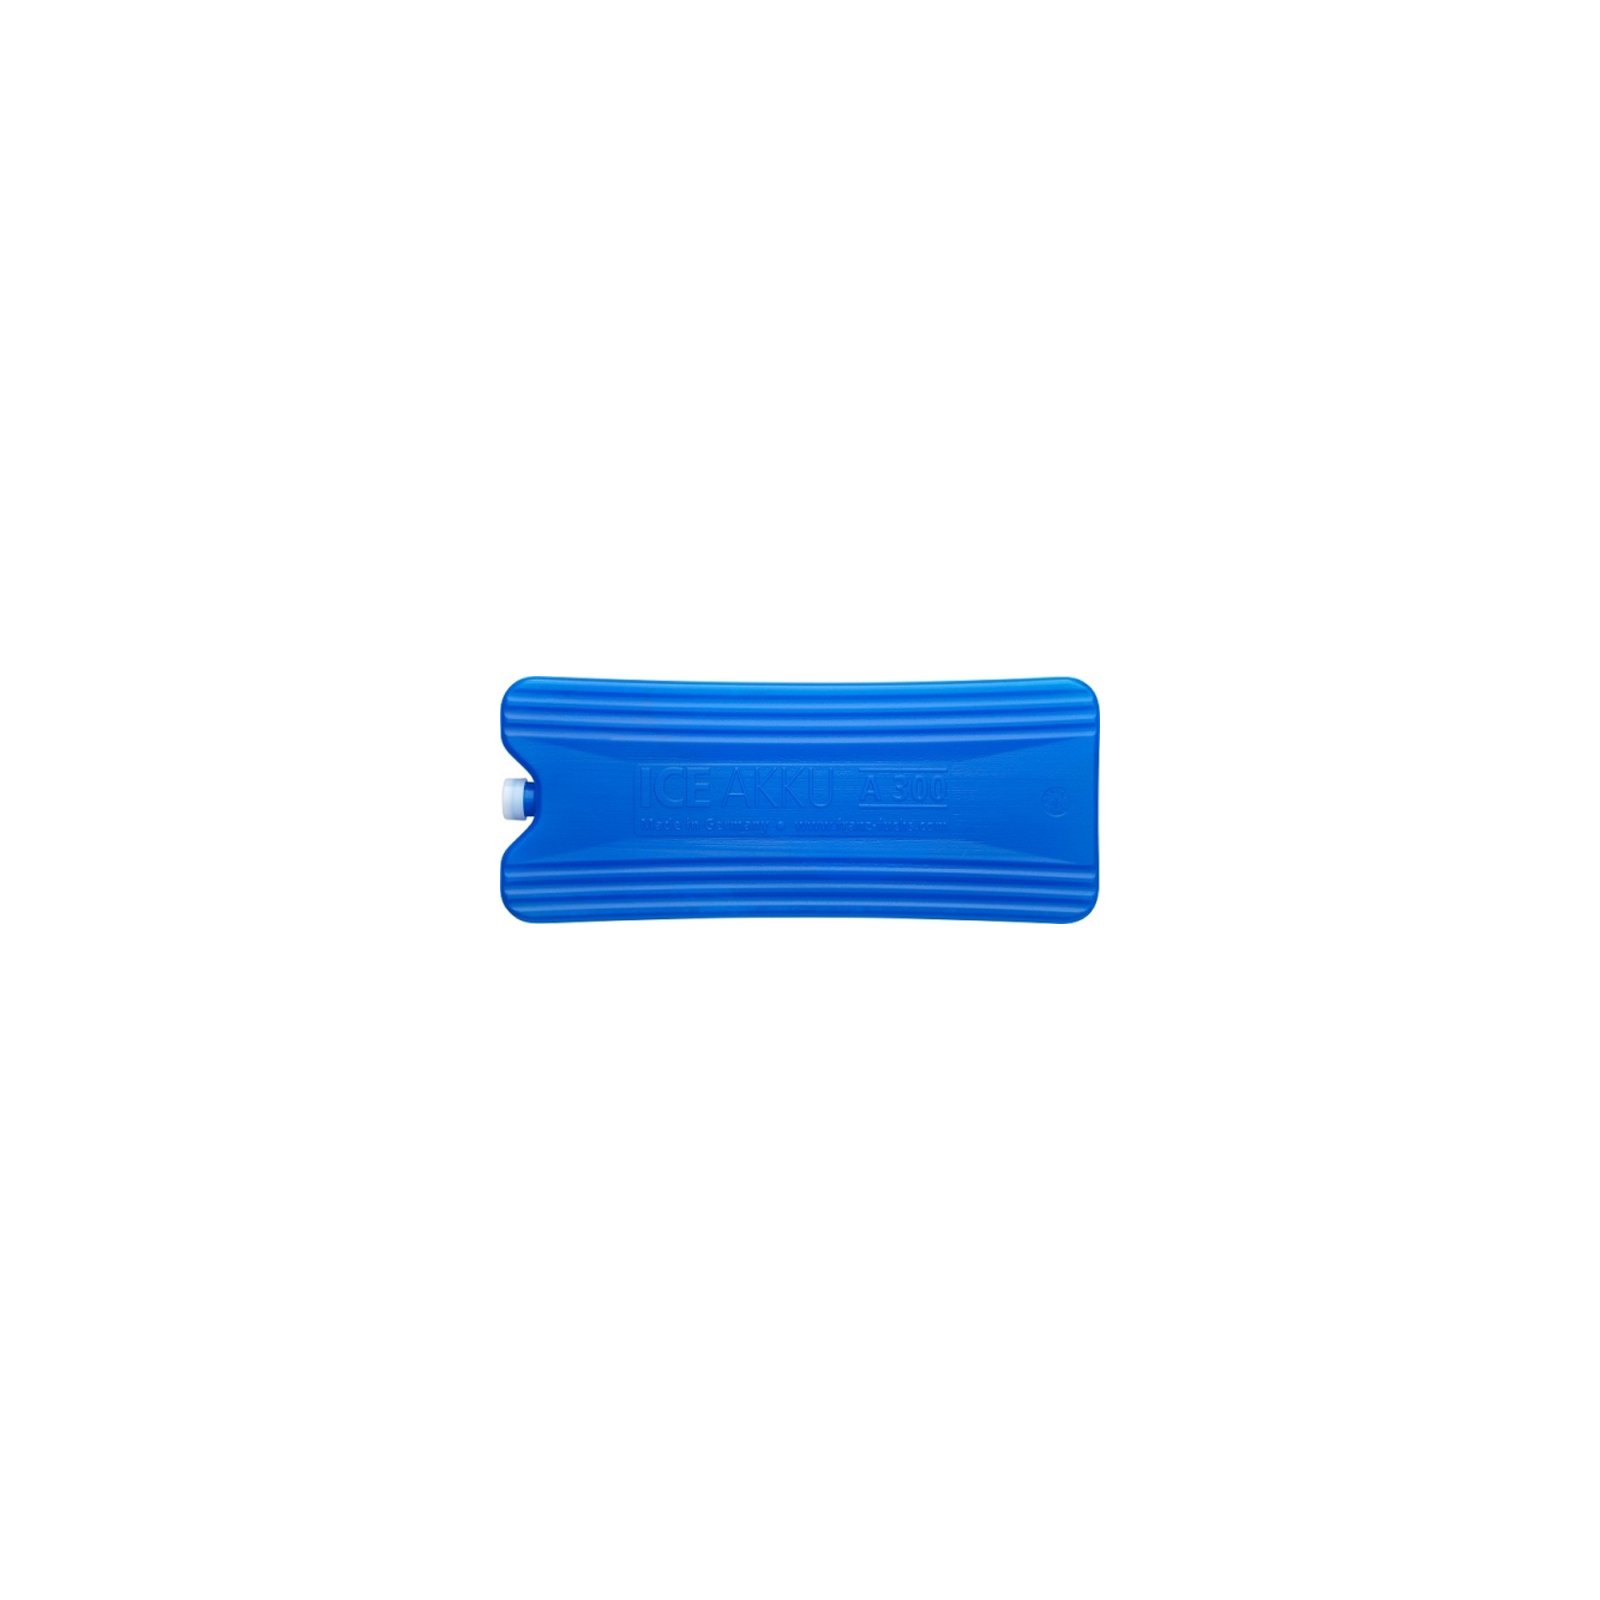 Аккумулятор холода Zorn IceAkku 1x300g blue (4251702500145) изображение 2